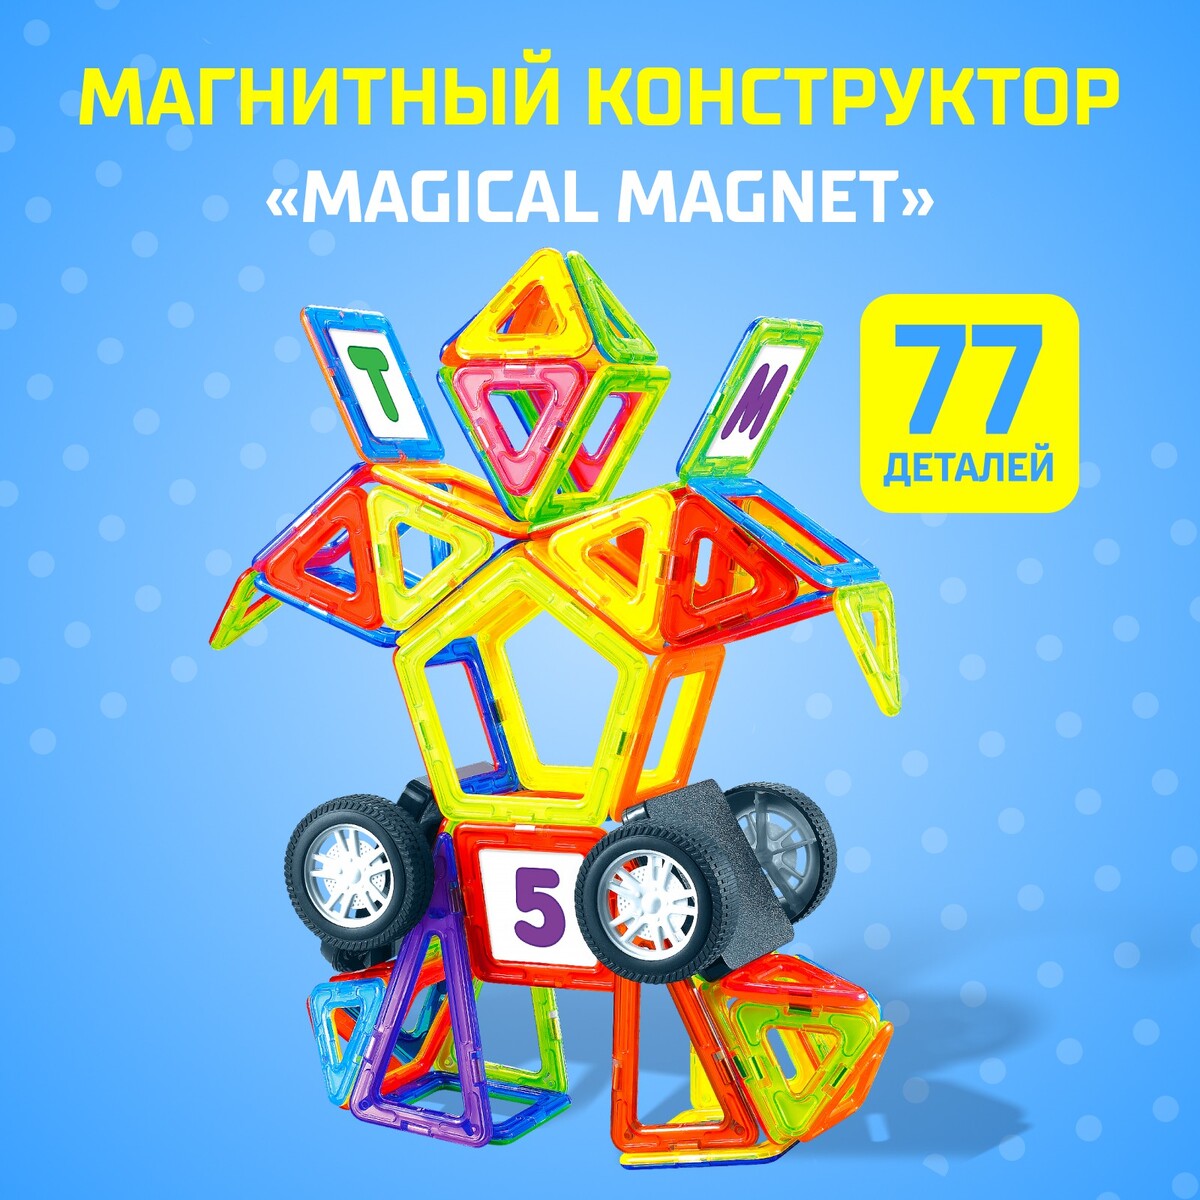 Магнитный конструктор magical magnet, 77 деталей, детали матовые конструктор теропром мини качели 33 детали 1552111